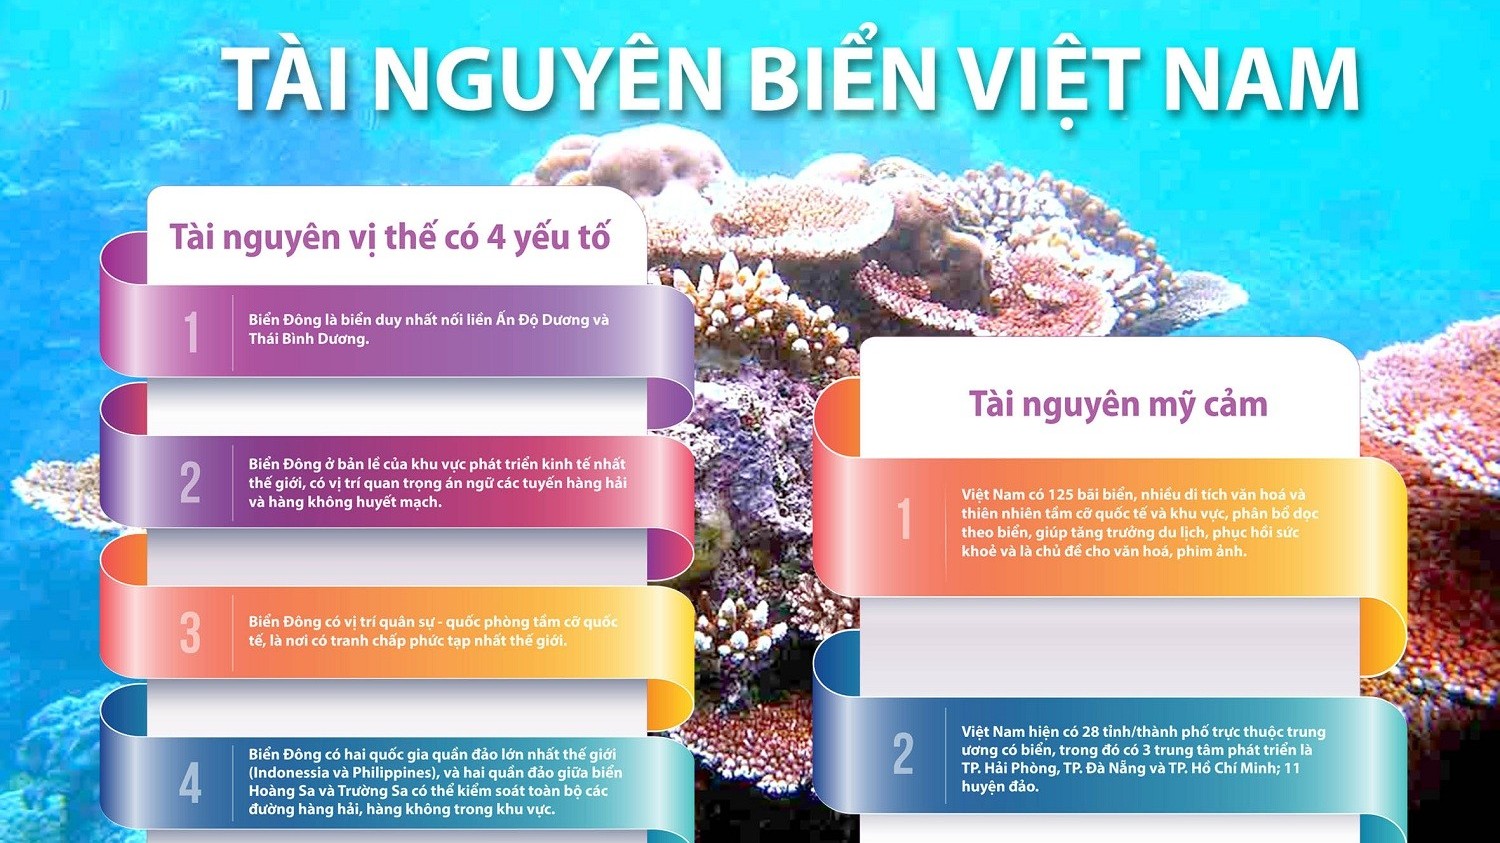 Tài nguyên biển Việt Nam